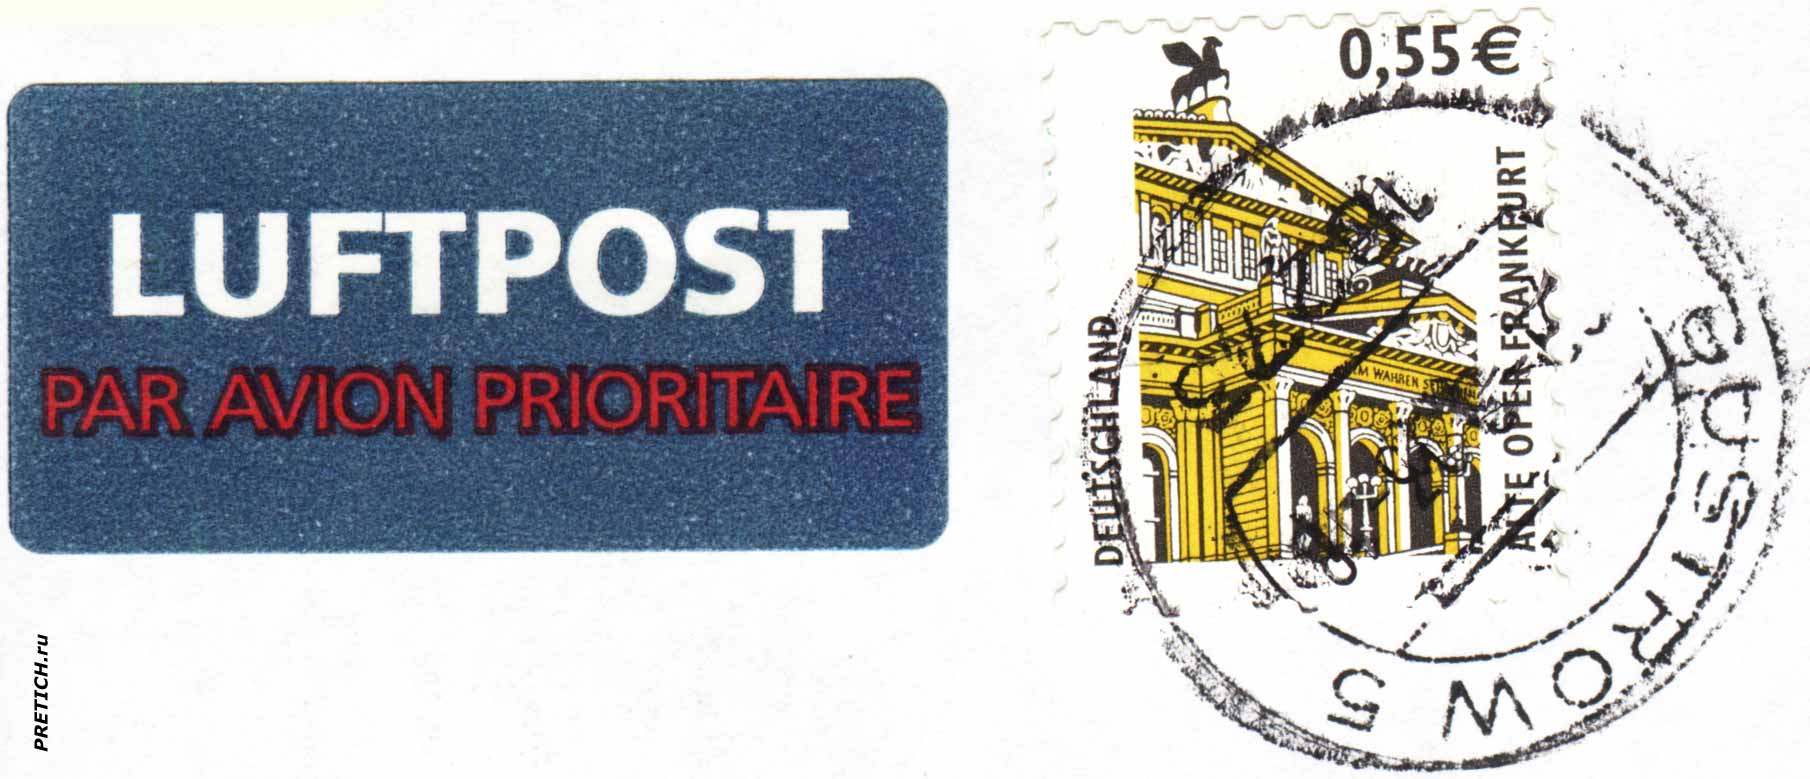 Alte OPER FRANKFURT почтовая марка Германии